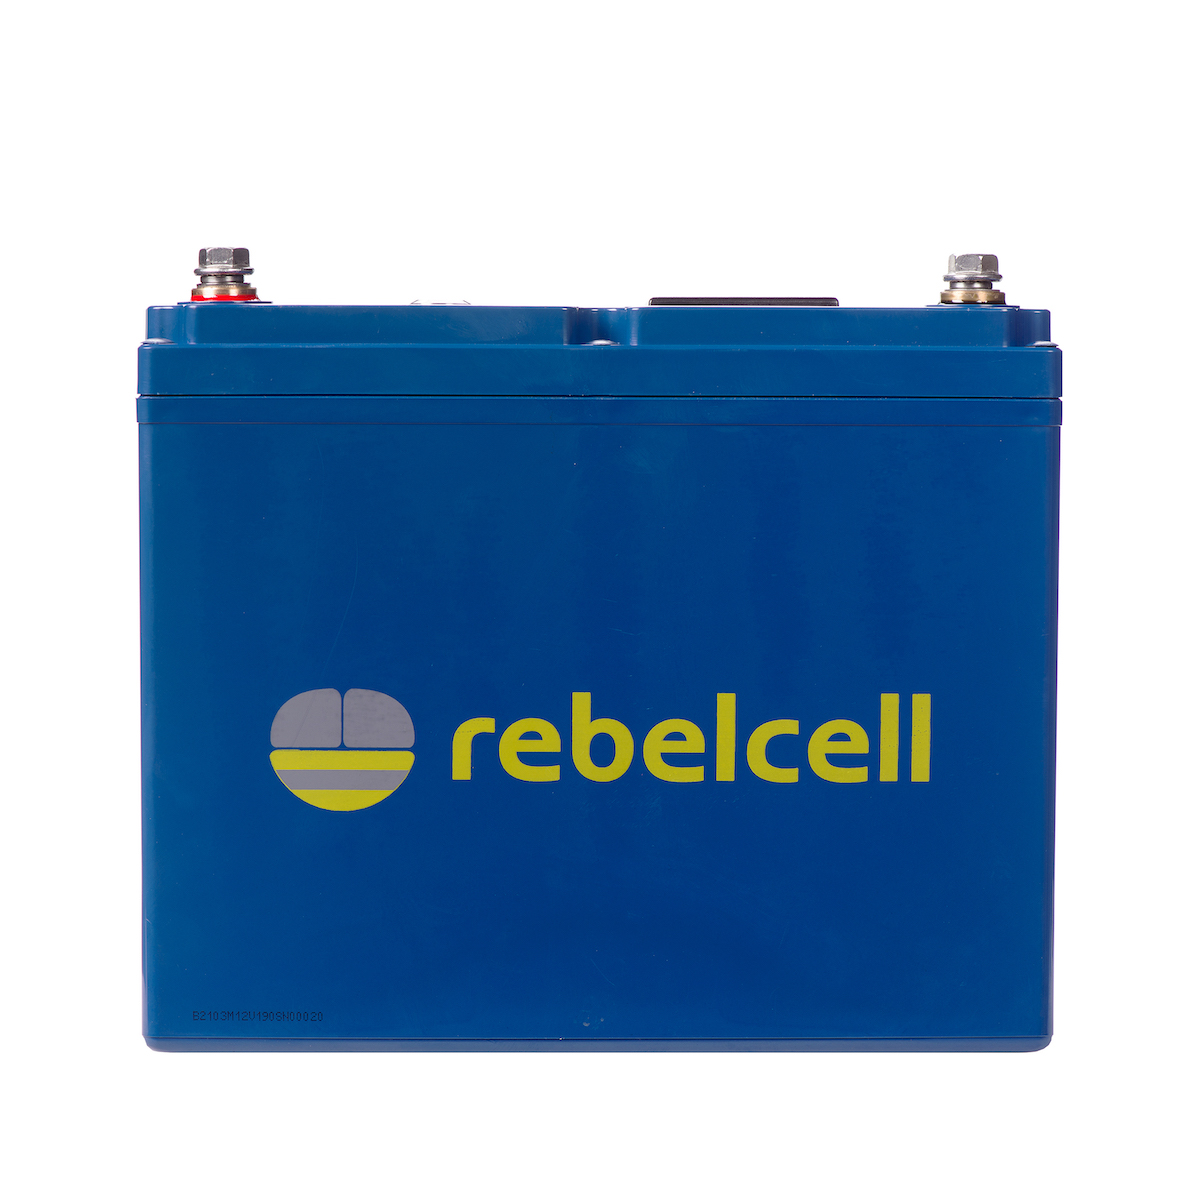 Rebelcell 12V190 AV battery product image